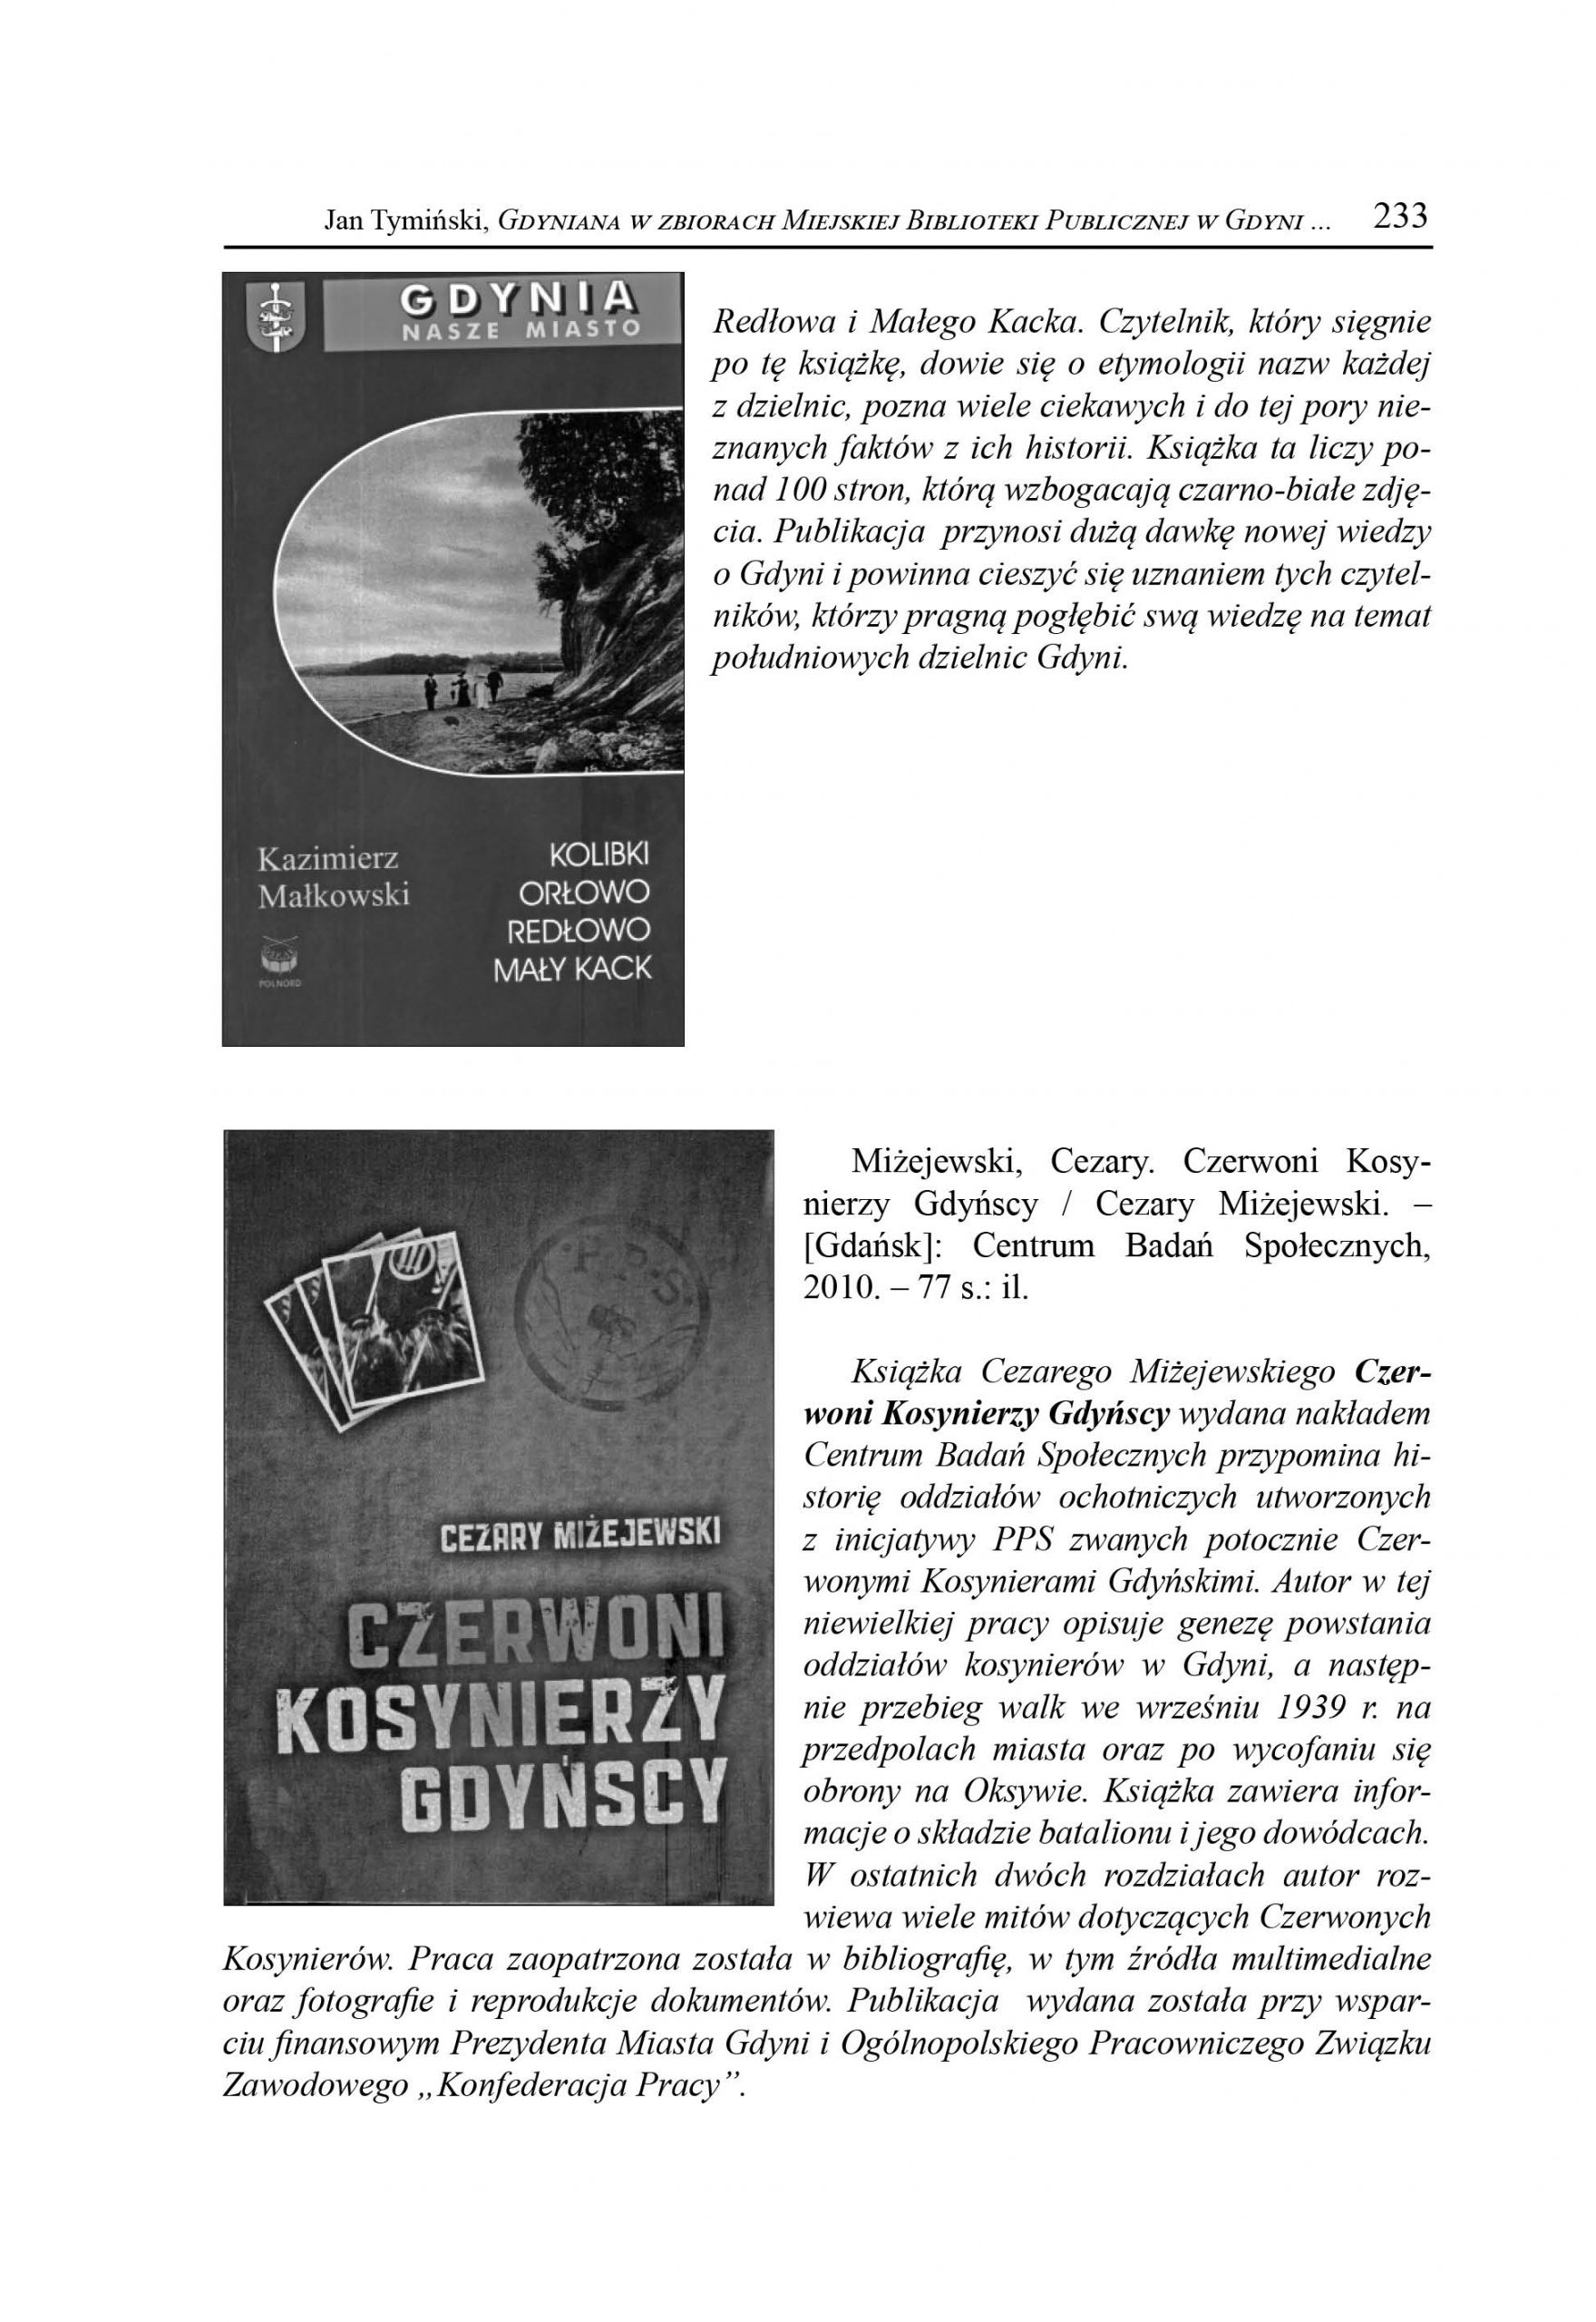 Gdyniana w zbiorach Miejskiej Biblioteki Publicznej w Gdyni. Wybór publikacji z lat 2009-2011